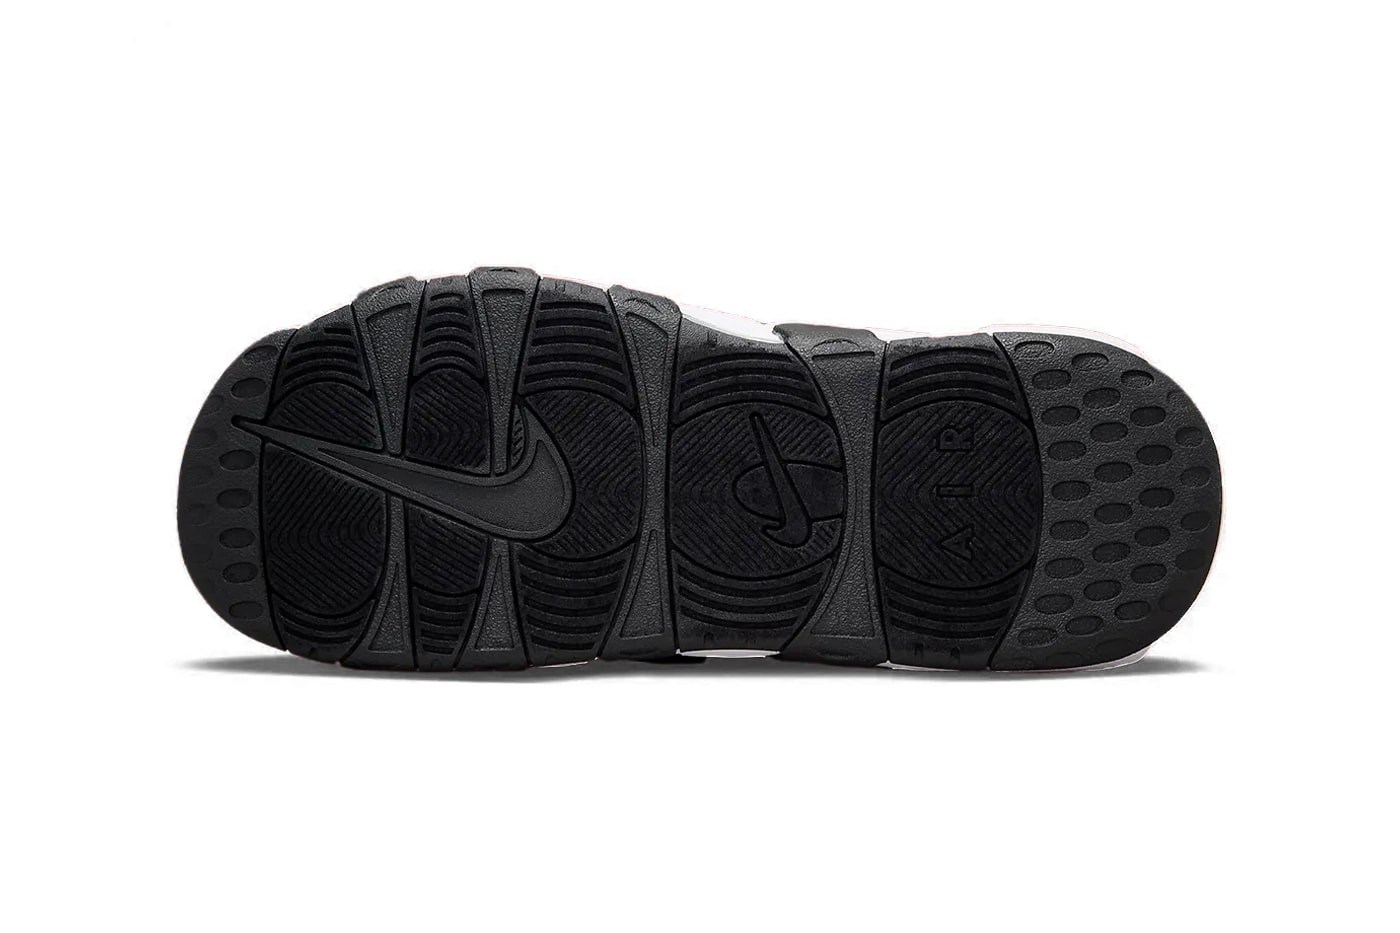 ナイキ エア モア アップテンポ スライドからクラシックなブラック/ホワイトを纏った新作が登場 Nike Air More Uptempo Slide Arrives in Blacked-Out Lettering FJ2708-001 Release Info sandals pool beach